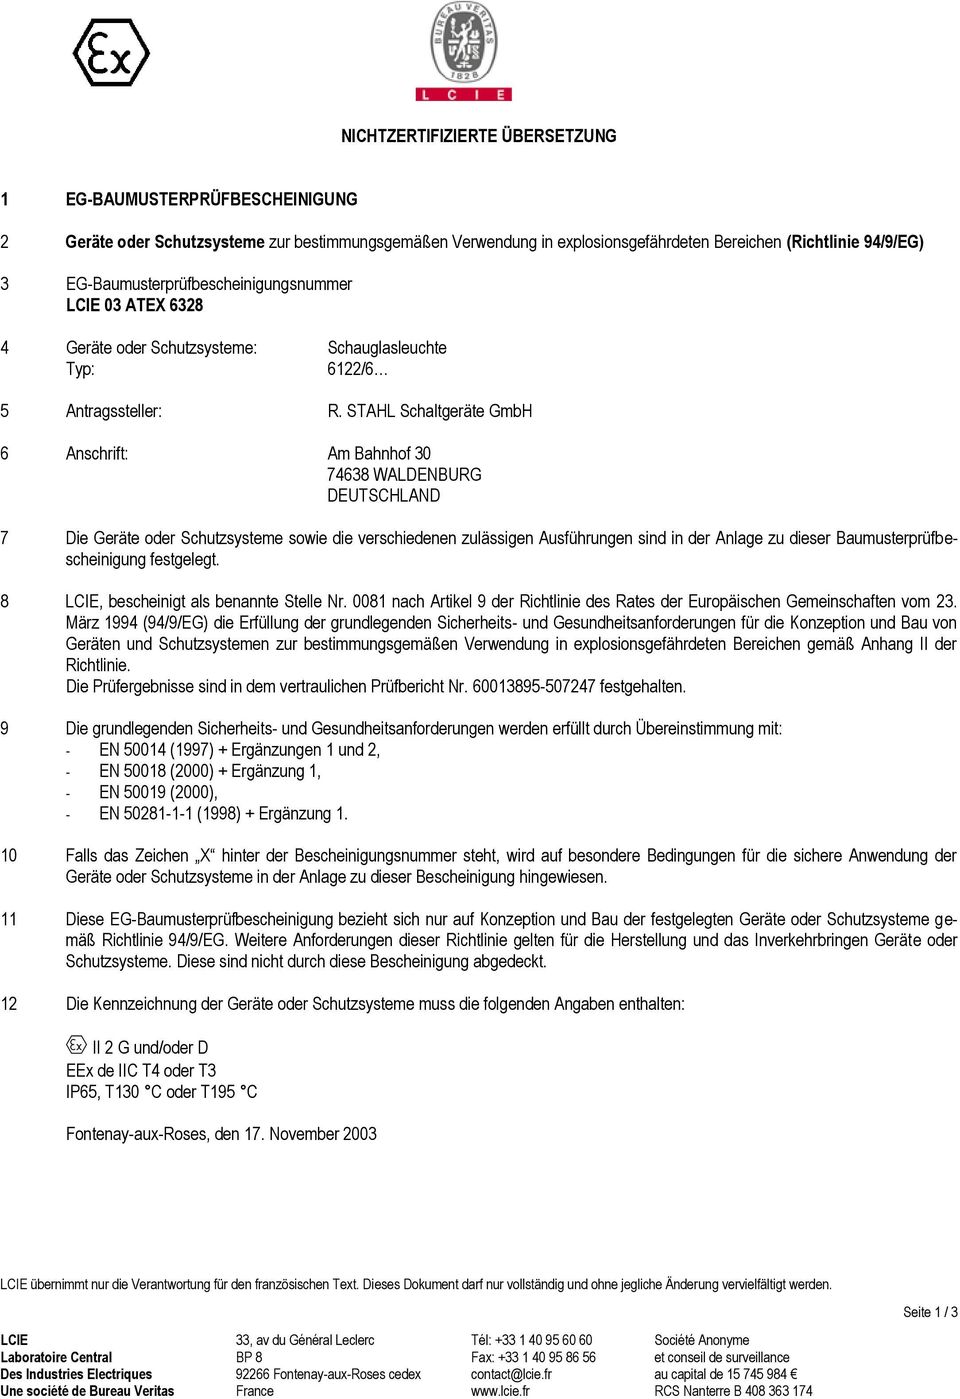 STAHL Schaltgeräte GmbH 6 Anschrift: Am Bahnhof 30 74638 WALDENBURG DEUTSCHLAND 7 Die Geräte oder Schutzsysteme sowie die verschiedenen zulässigen Ausführungen sind in der Anlage zu dieser